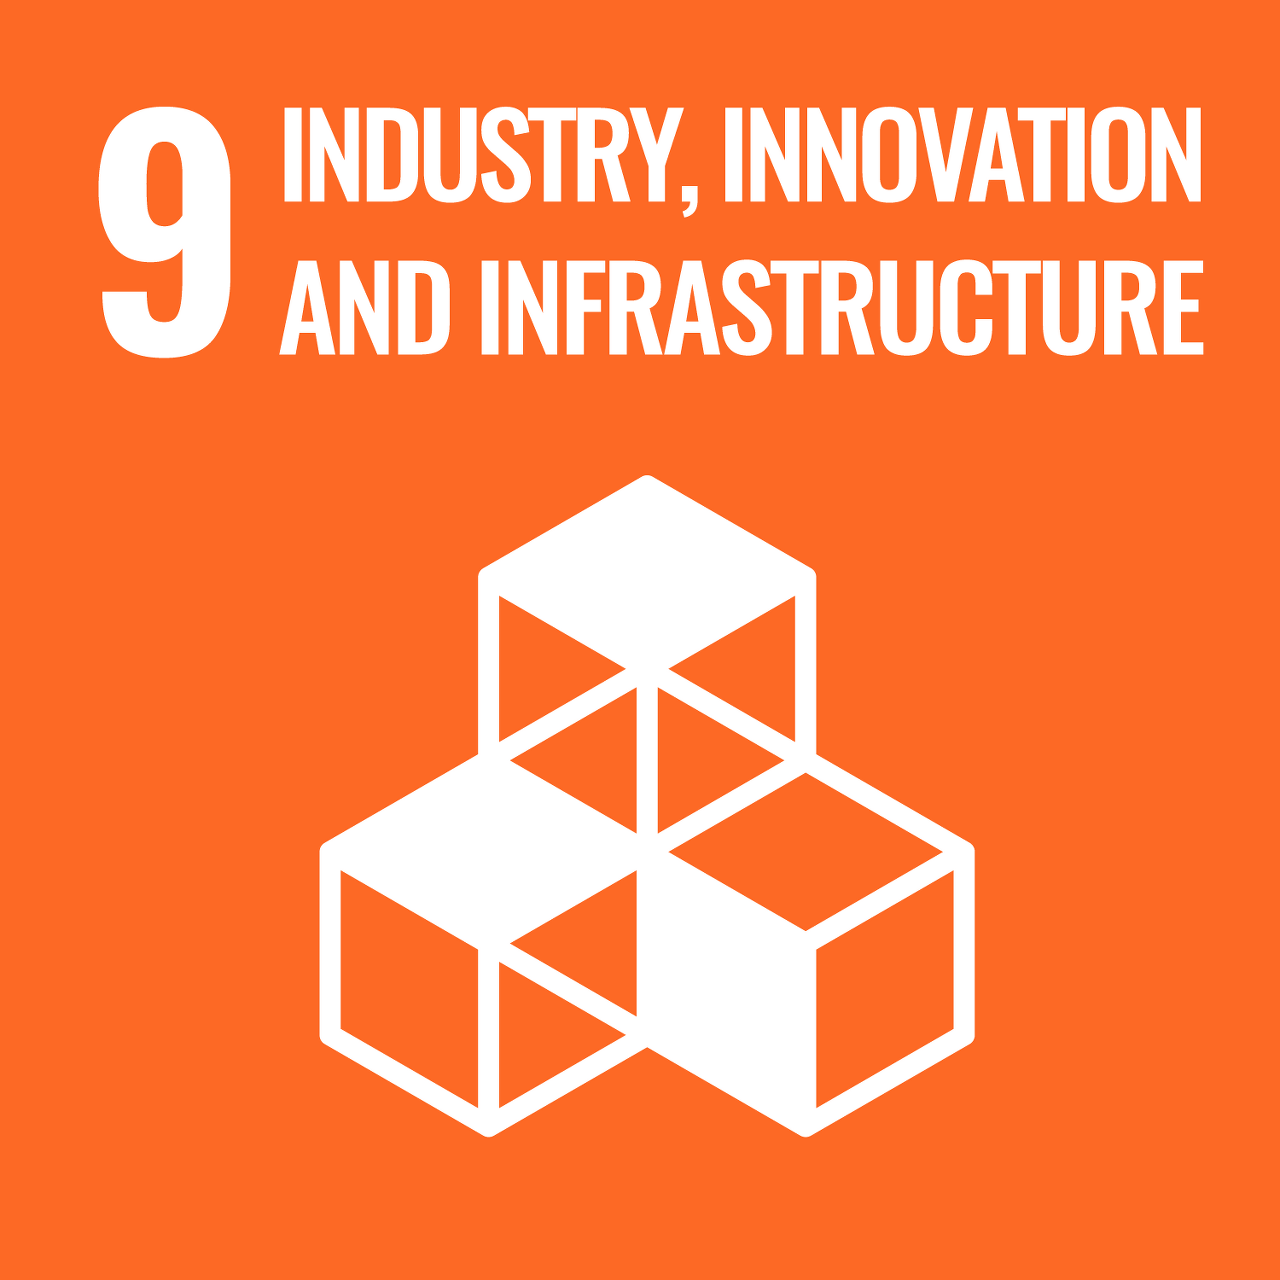 산업, 혁신과 사회기반시설 - 회복력 있는 사회기반시설 구축, 포용적이고 지속가능한 산업화 증진과 혁신 도모